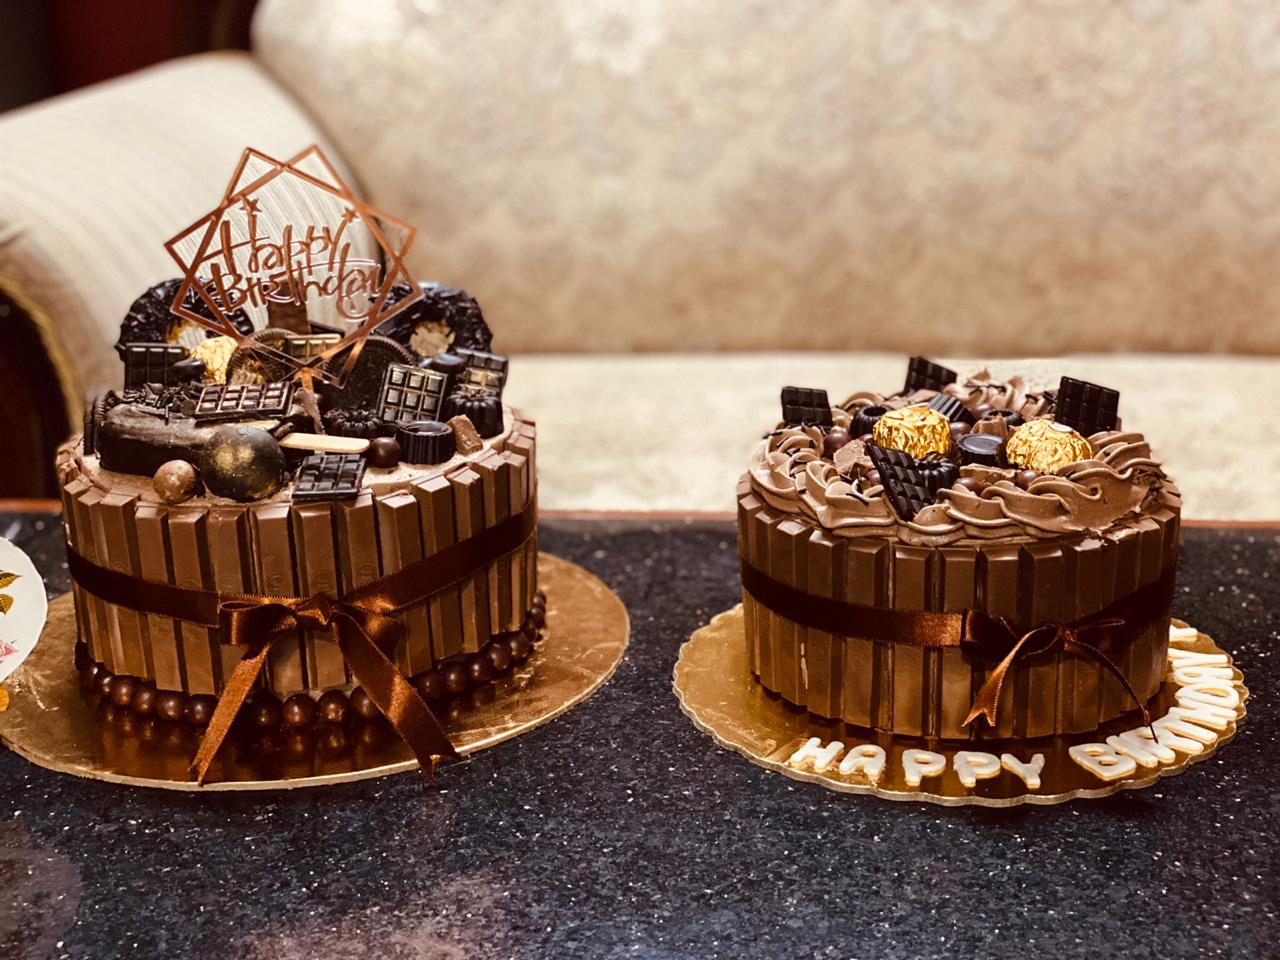 KIT KAT® Chocolate Layer Cake Recipe | HERSHEY'S